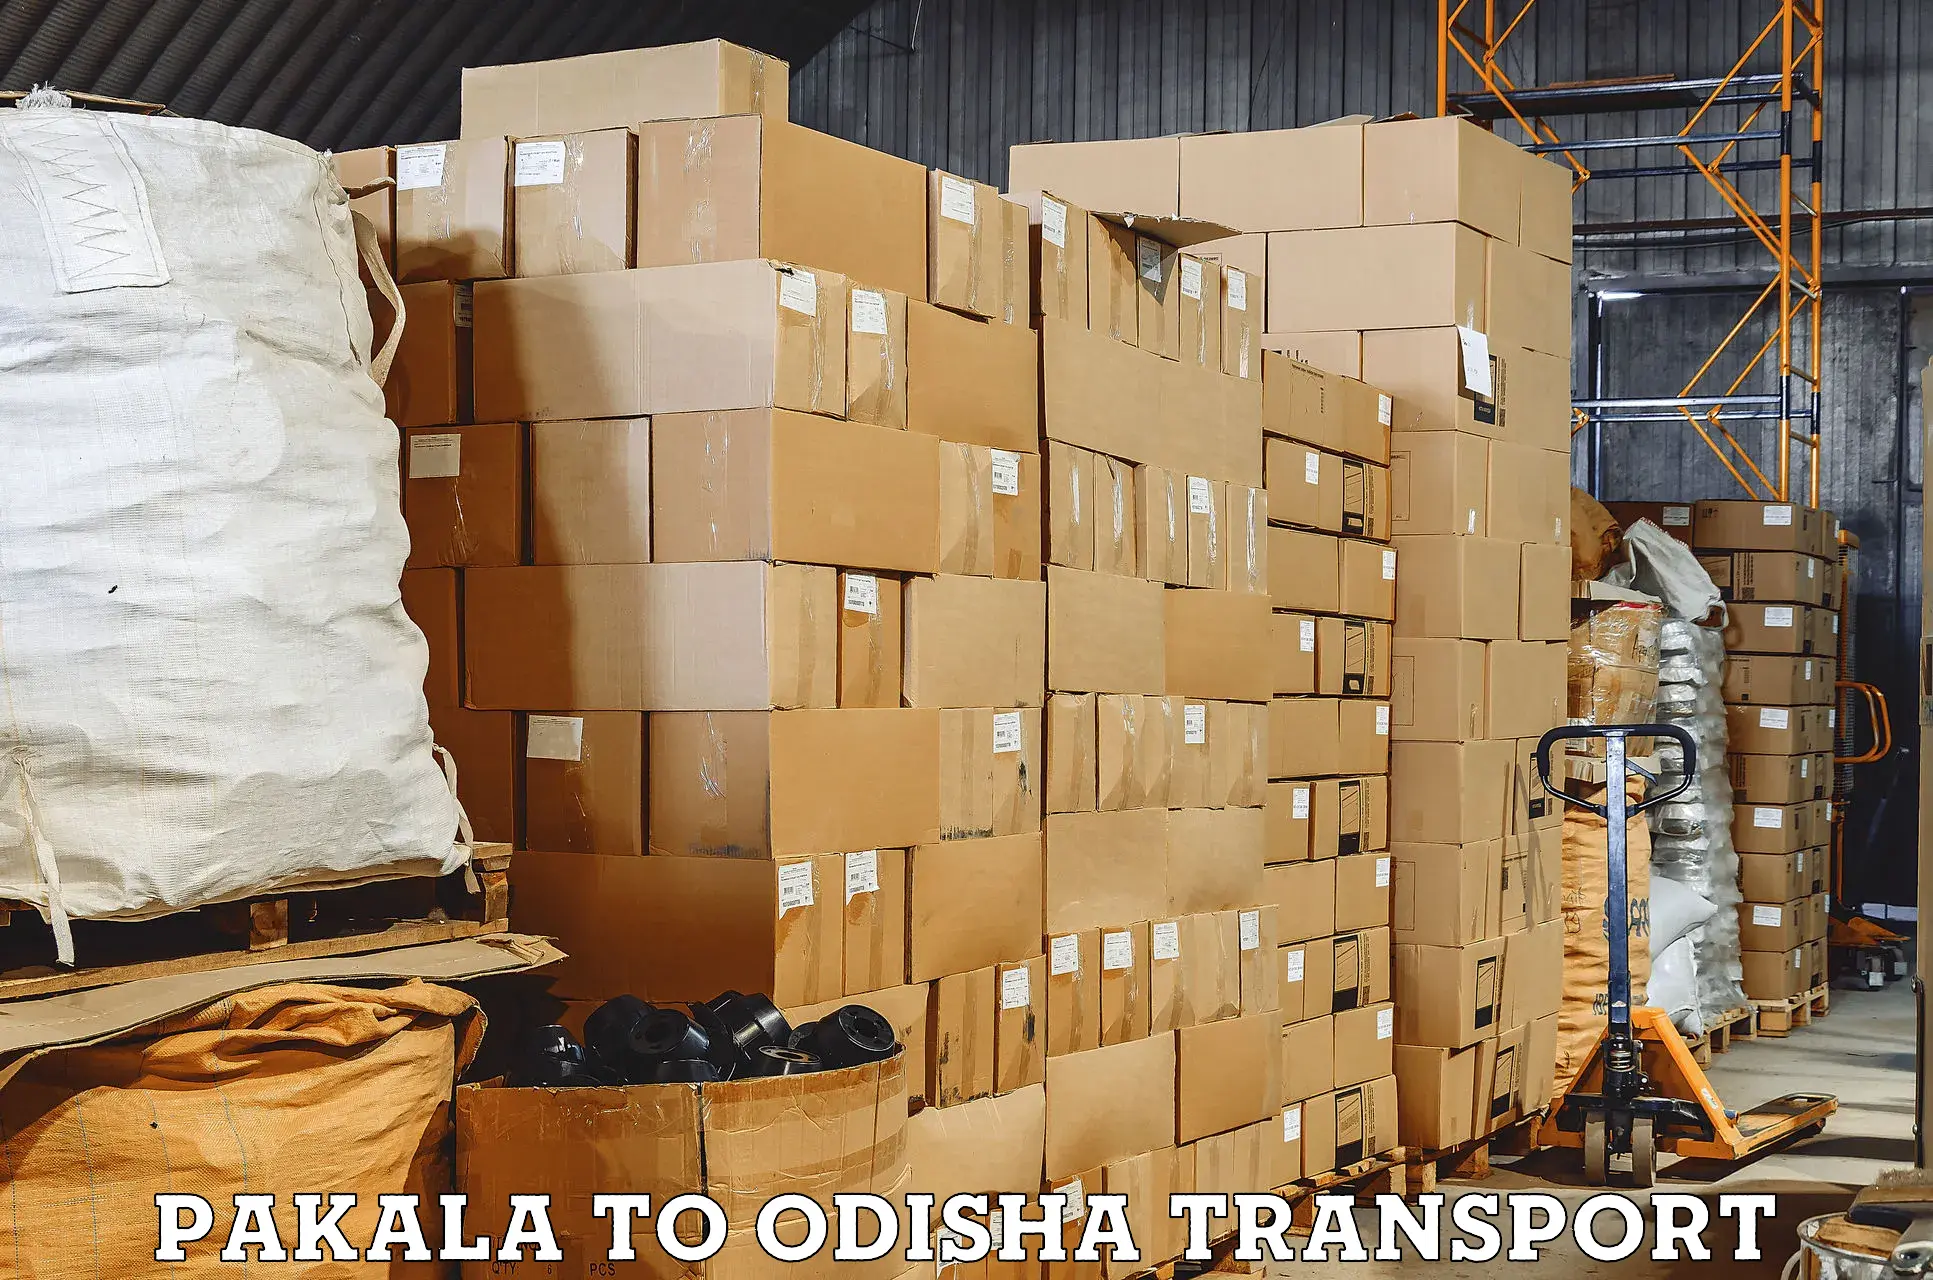 Two wheeler transport services Pakala to Kantamal